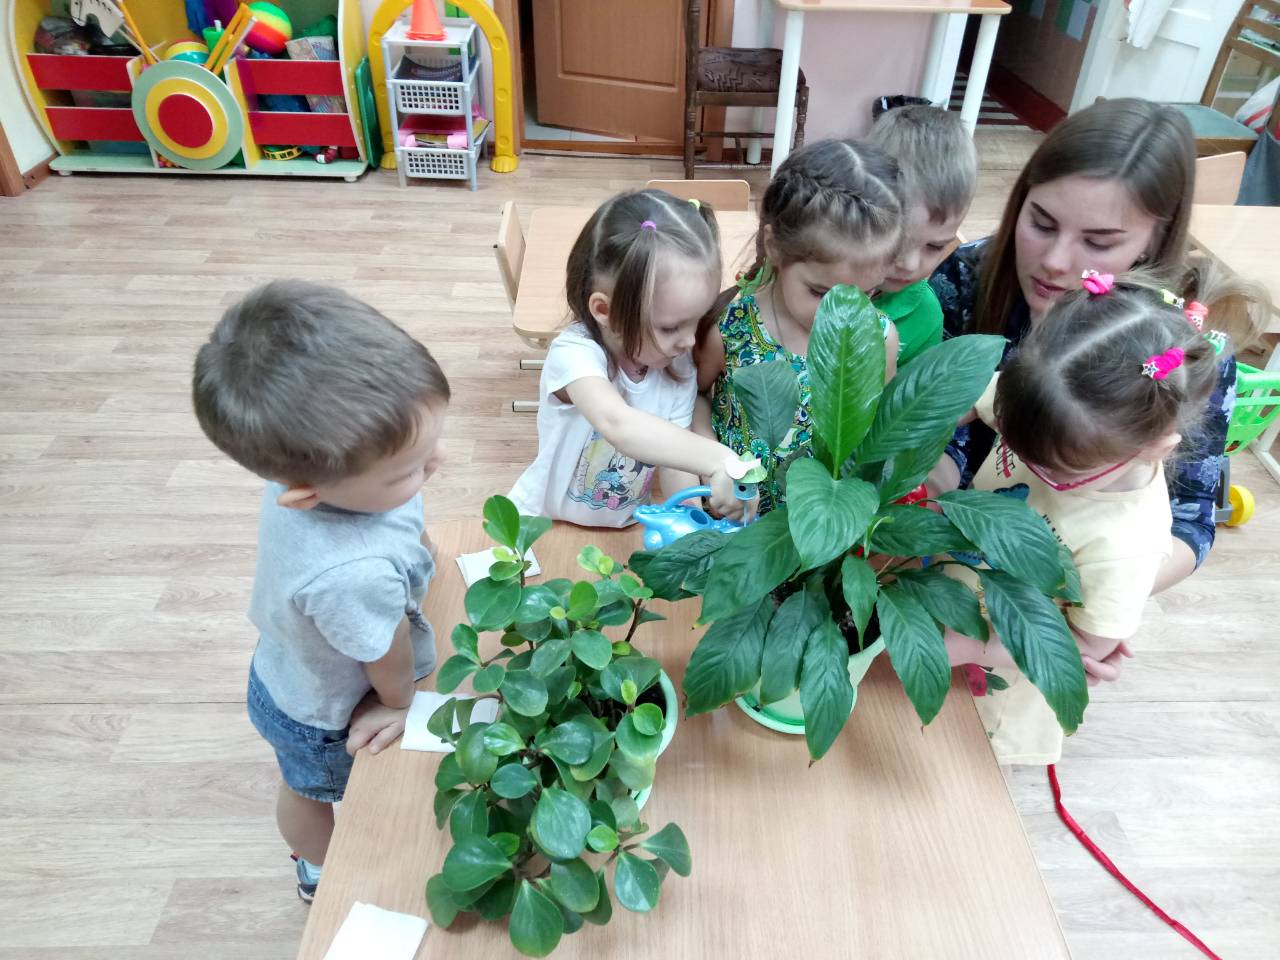 Мир цветов младшая группа. Комнатные растения 2 младшая группа. Комнатные растения для дошкольников младшая группа. Комнатные растения в младшей группе детского сада. Посадка цветов в ДОУ С детьми.